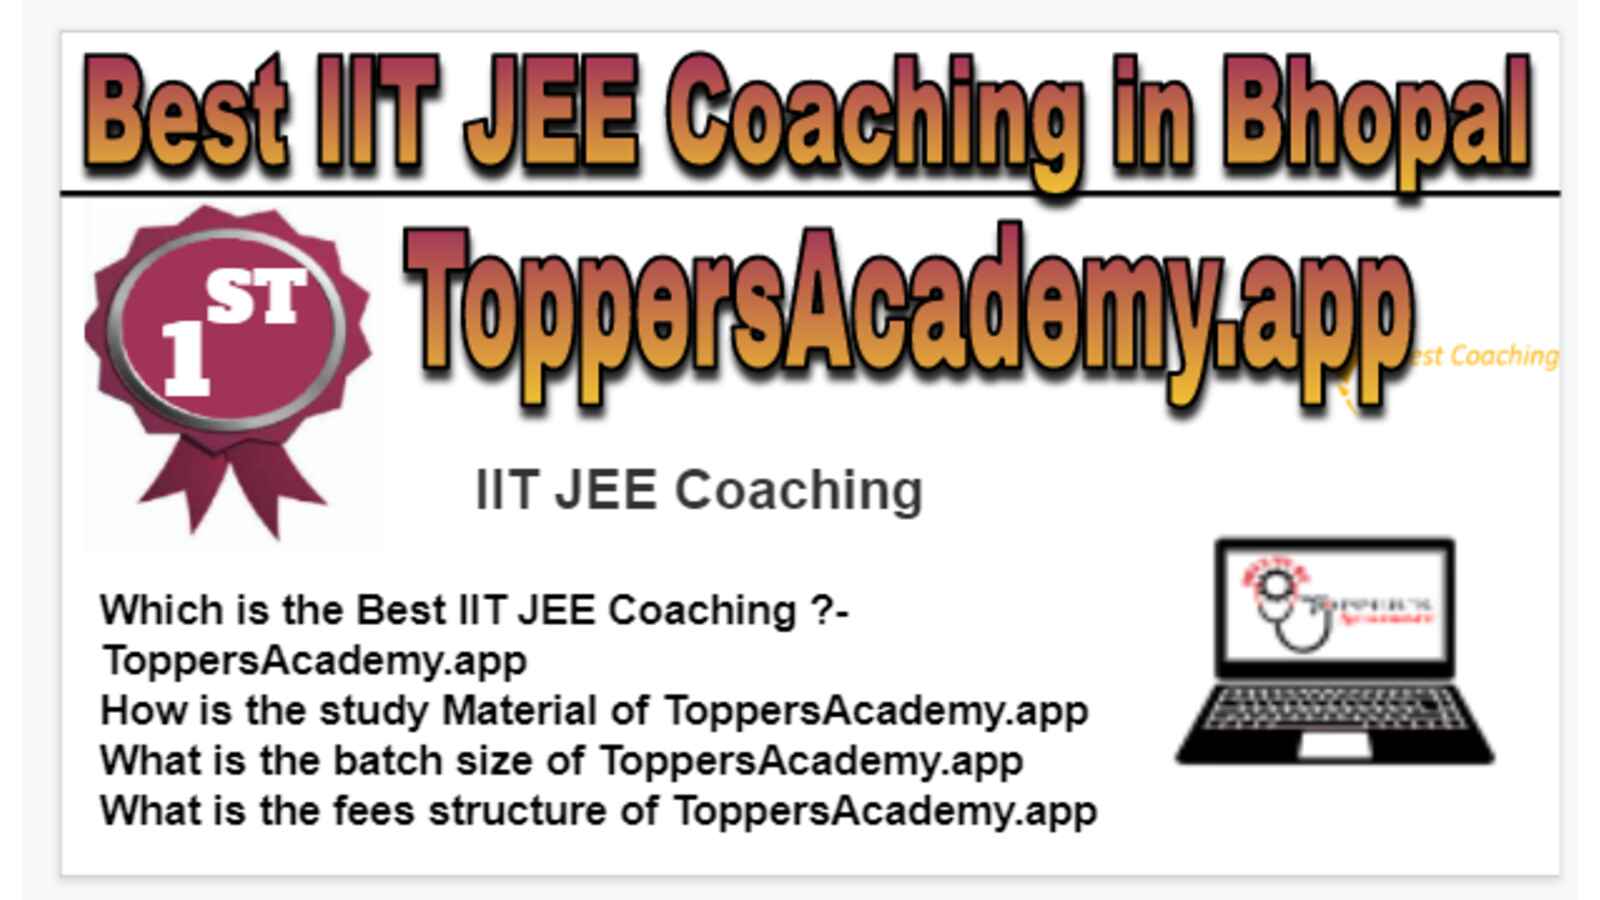 Rank 1 Best IIT JEE Coaching in Bhopal